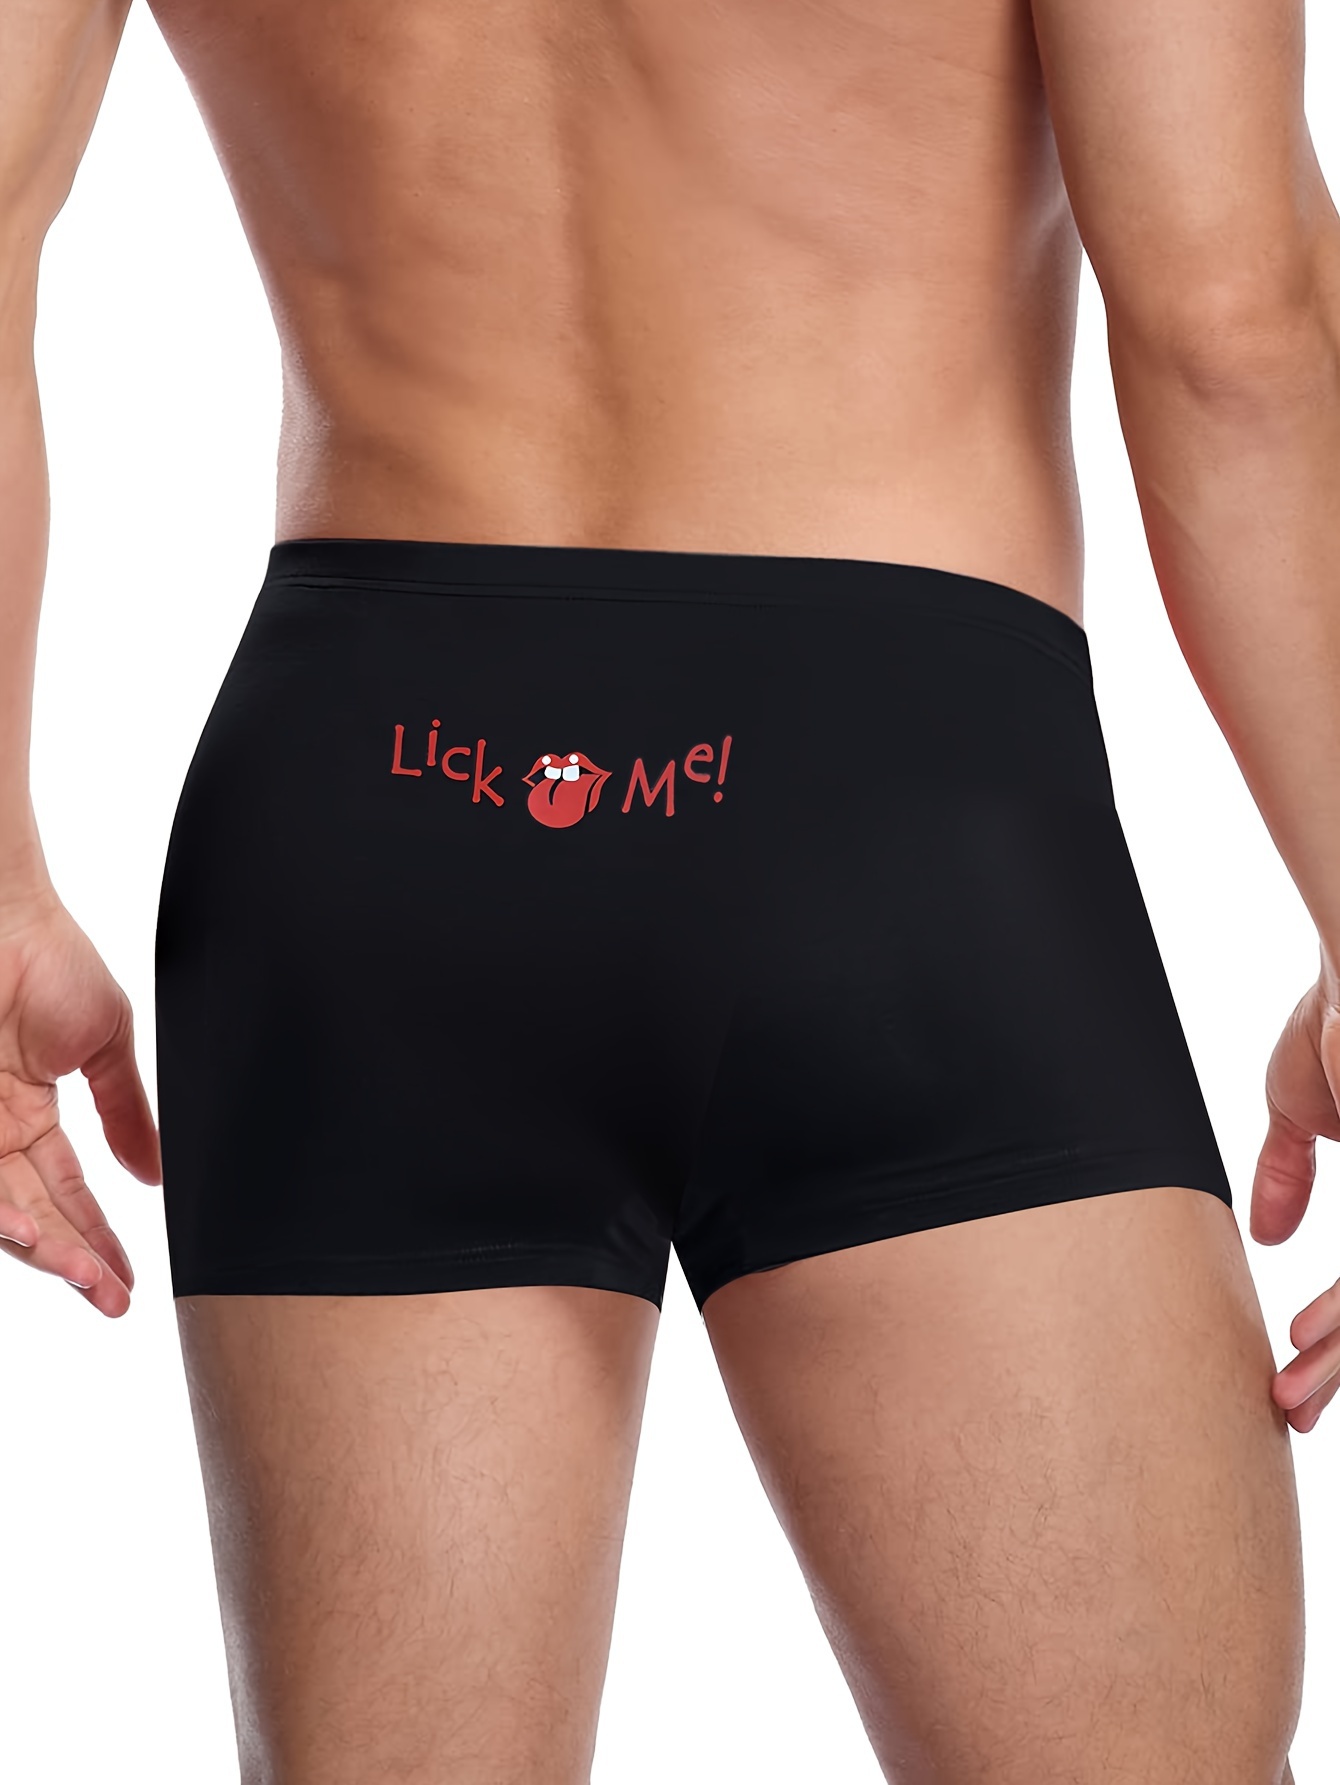 Lick me, Boxer briefs underwear